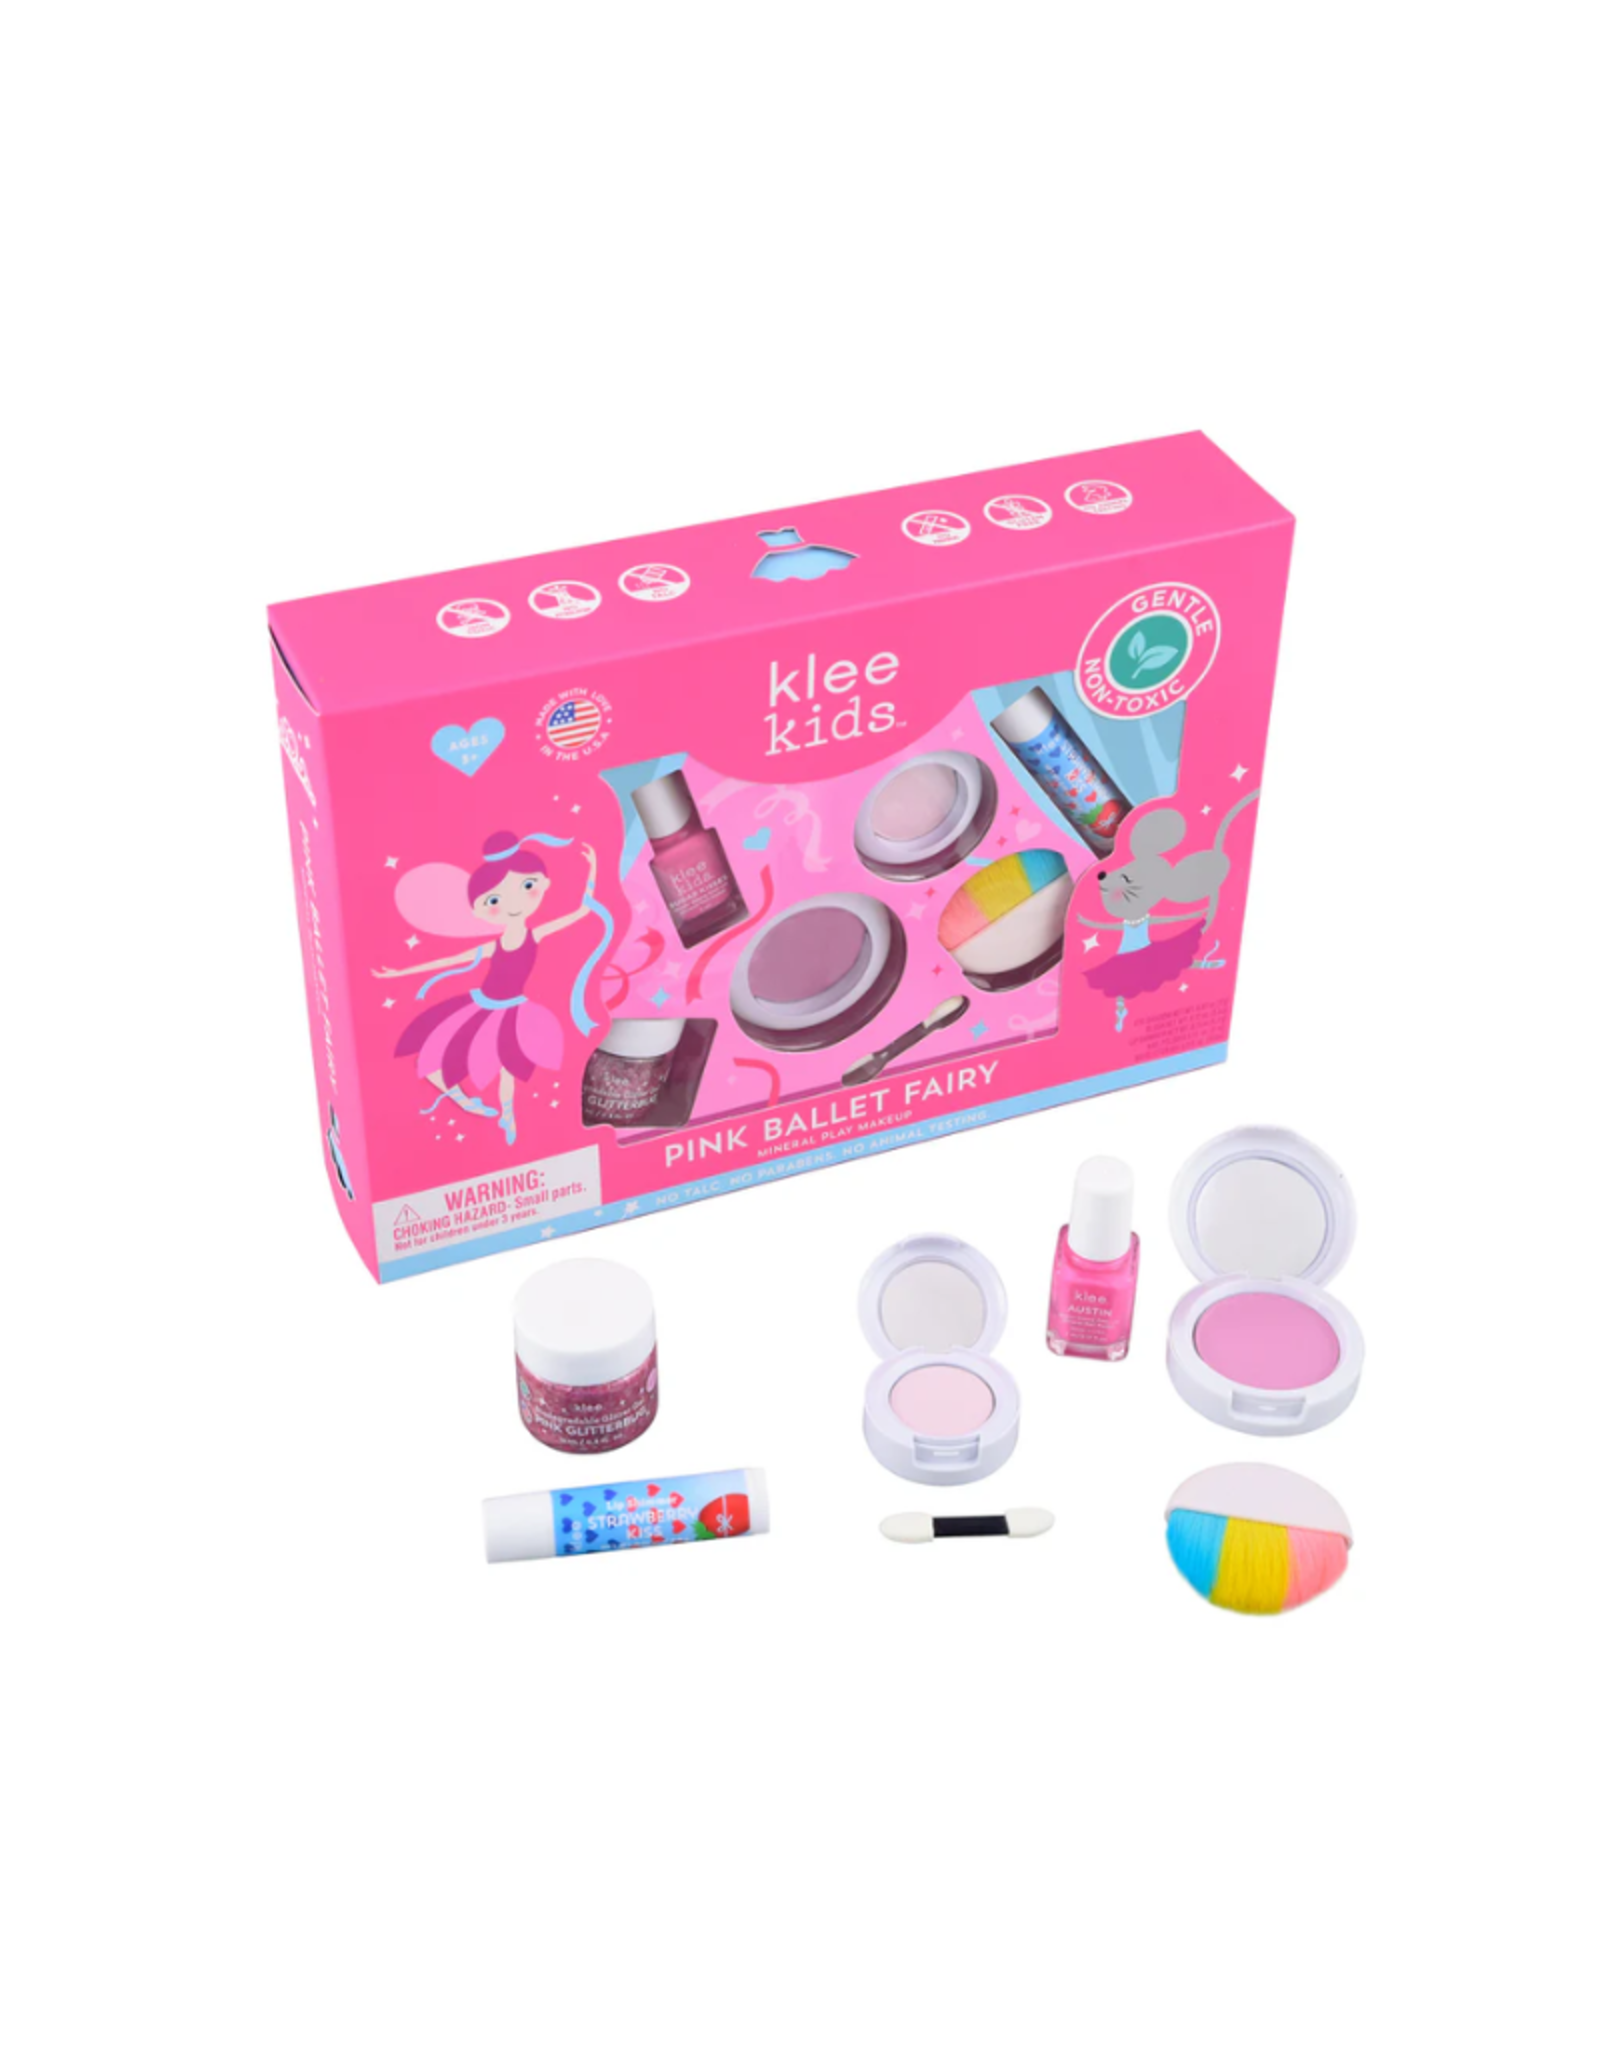 Klee Pink Ballet Fairy - Klee Kids Mineral Play Makeup  Kit